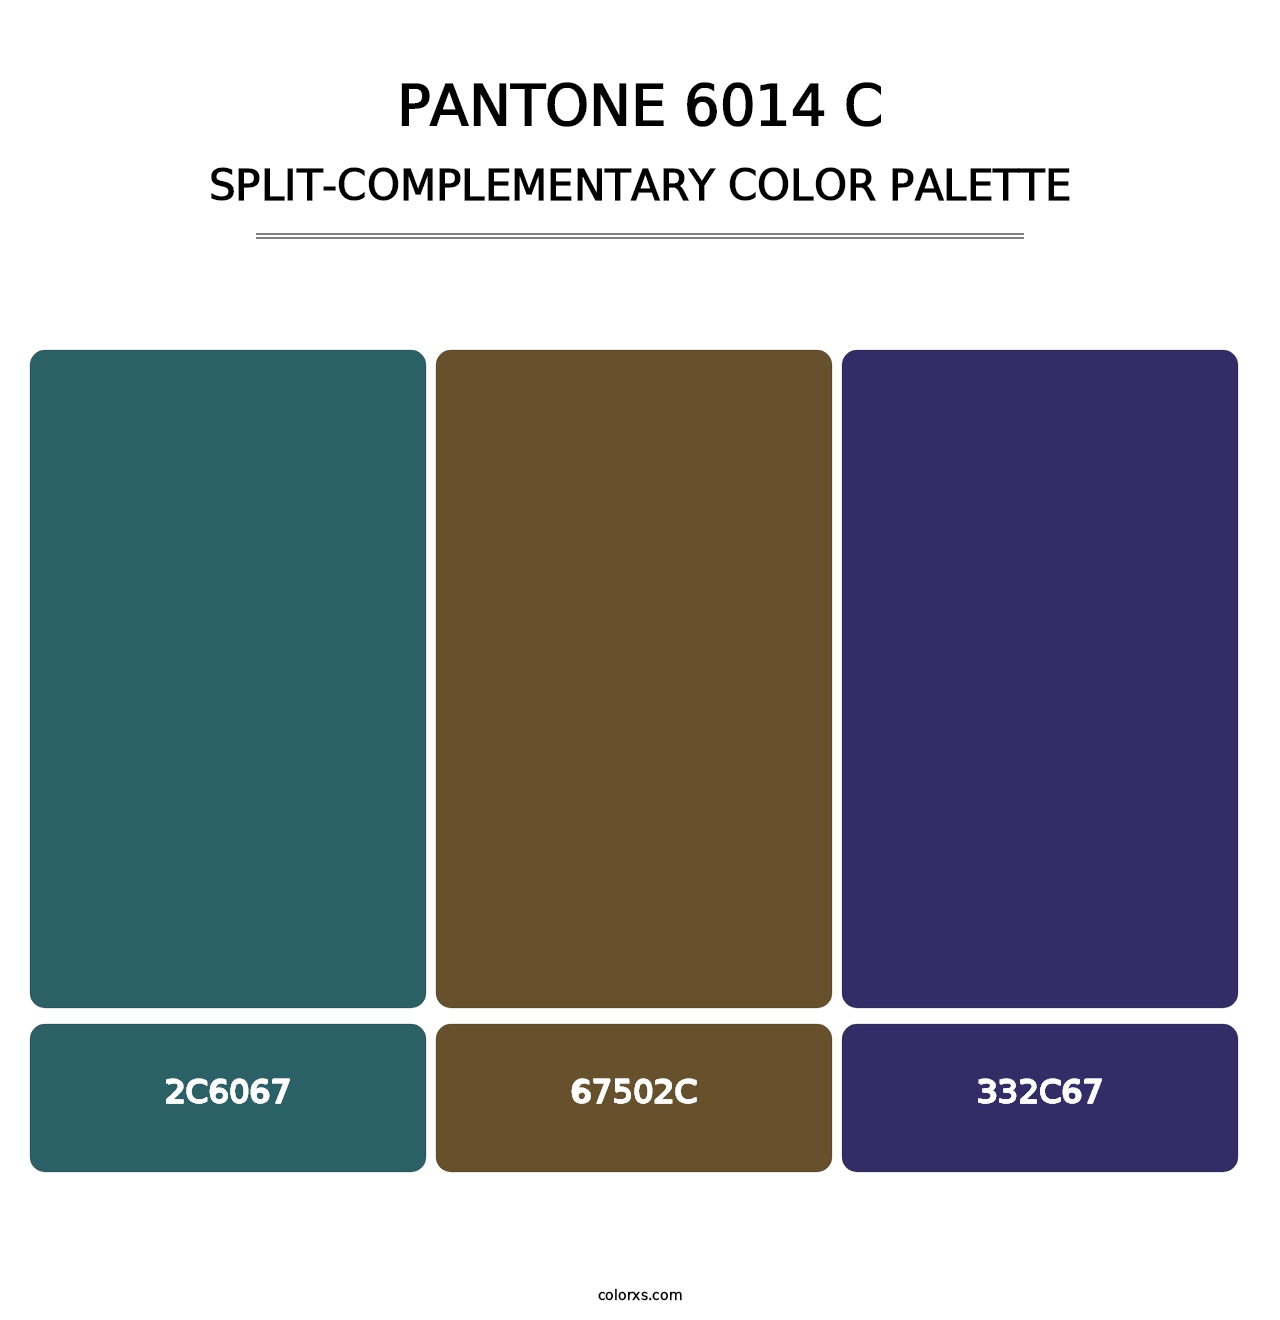 PANTONE 6014 C - Split-Complementary Color Palette